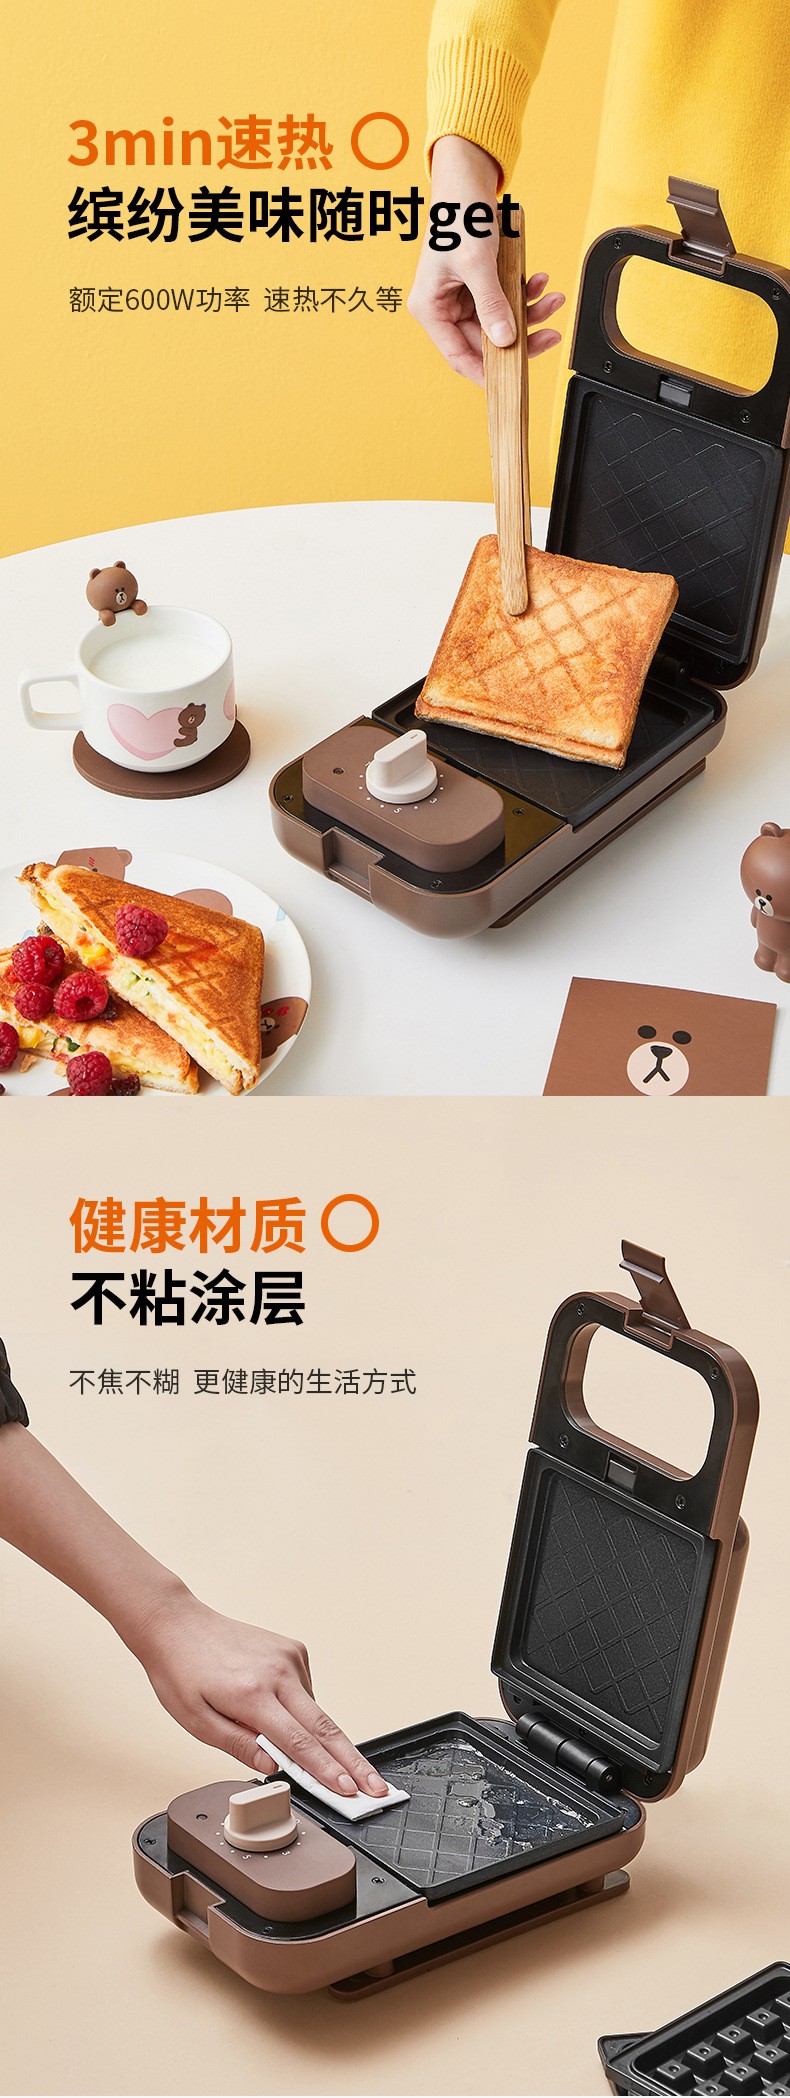 九阳家用按键式时尚烤面包机